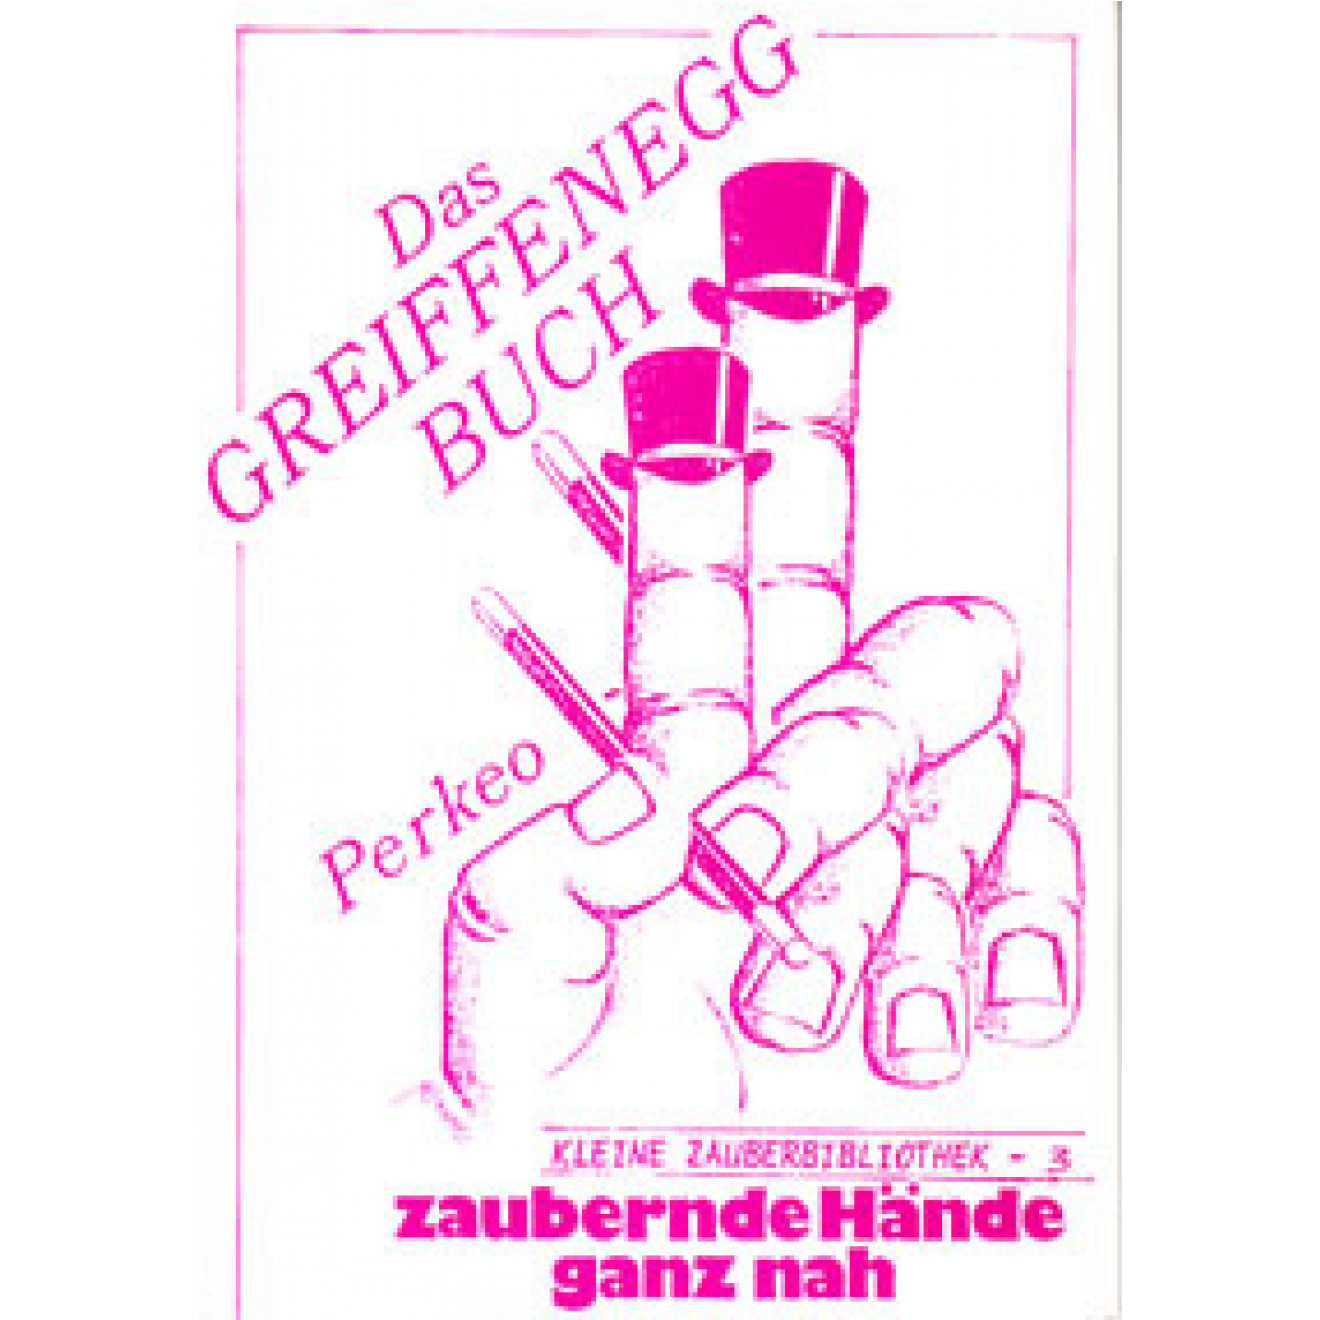 Das Greiffenegg-Buch - Zaubernde Hände ganz nah